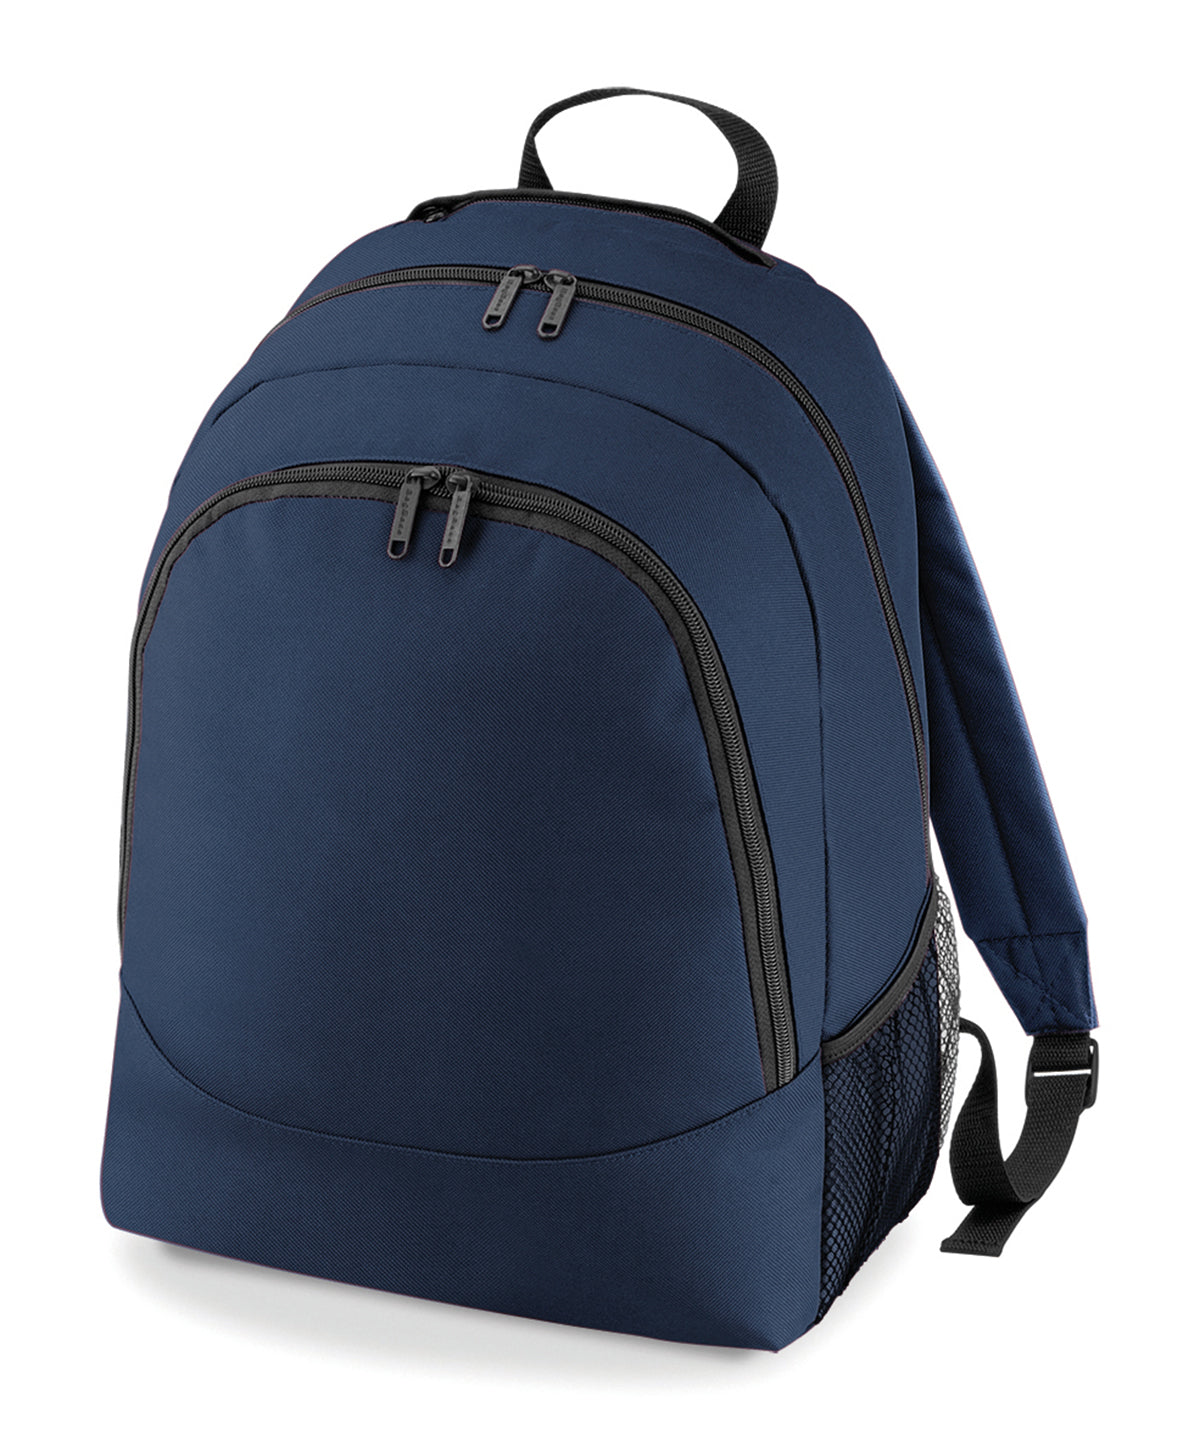 Personalised Bags - Navy Bagbase Universal backpack